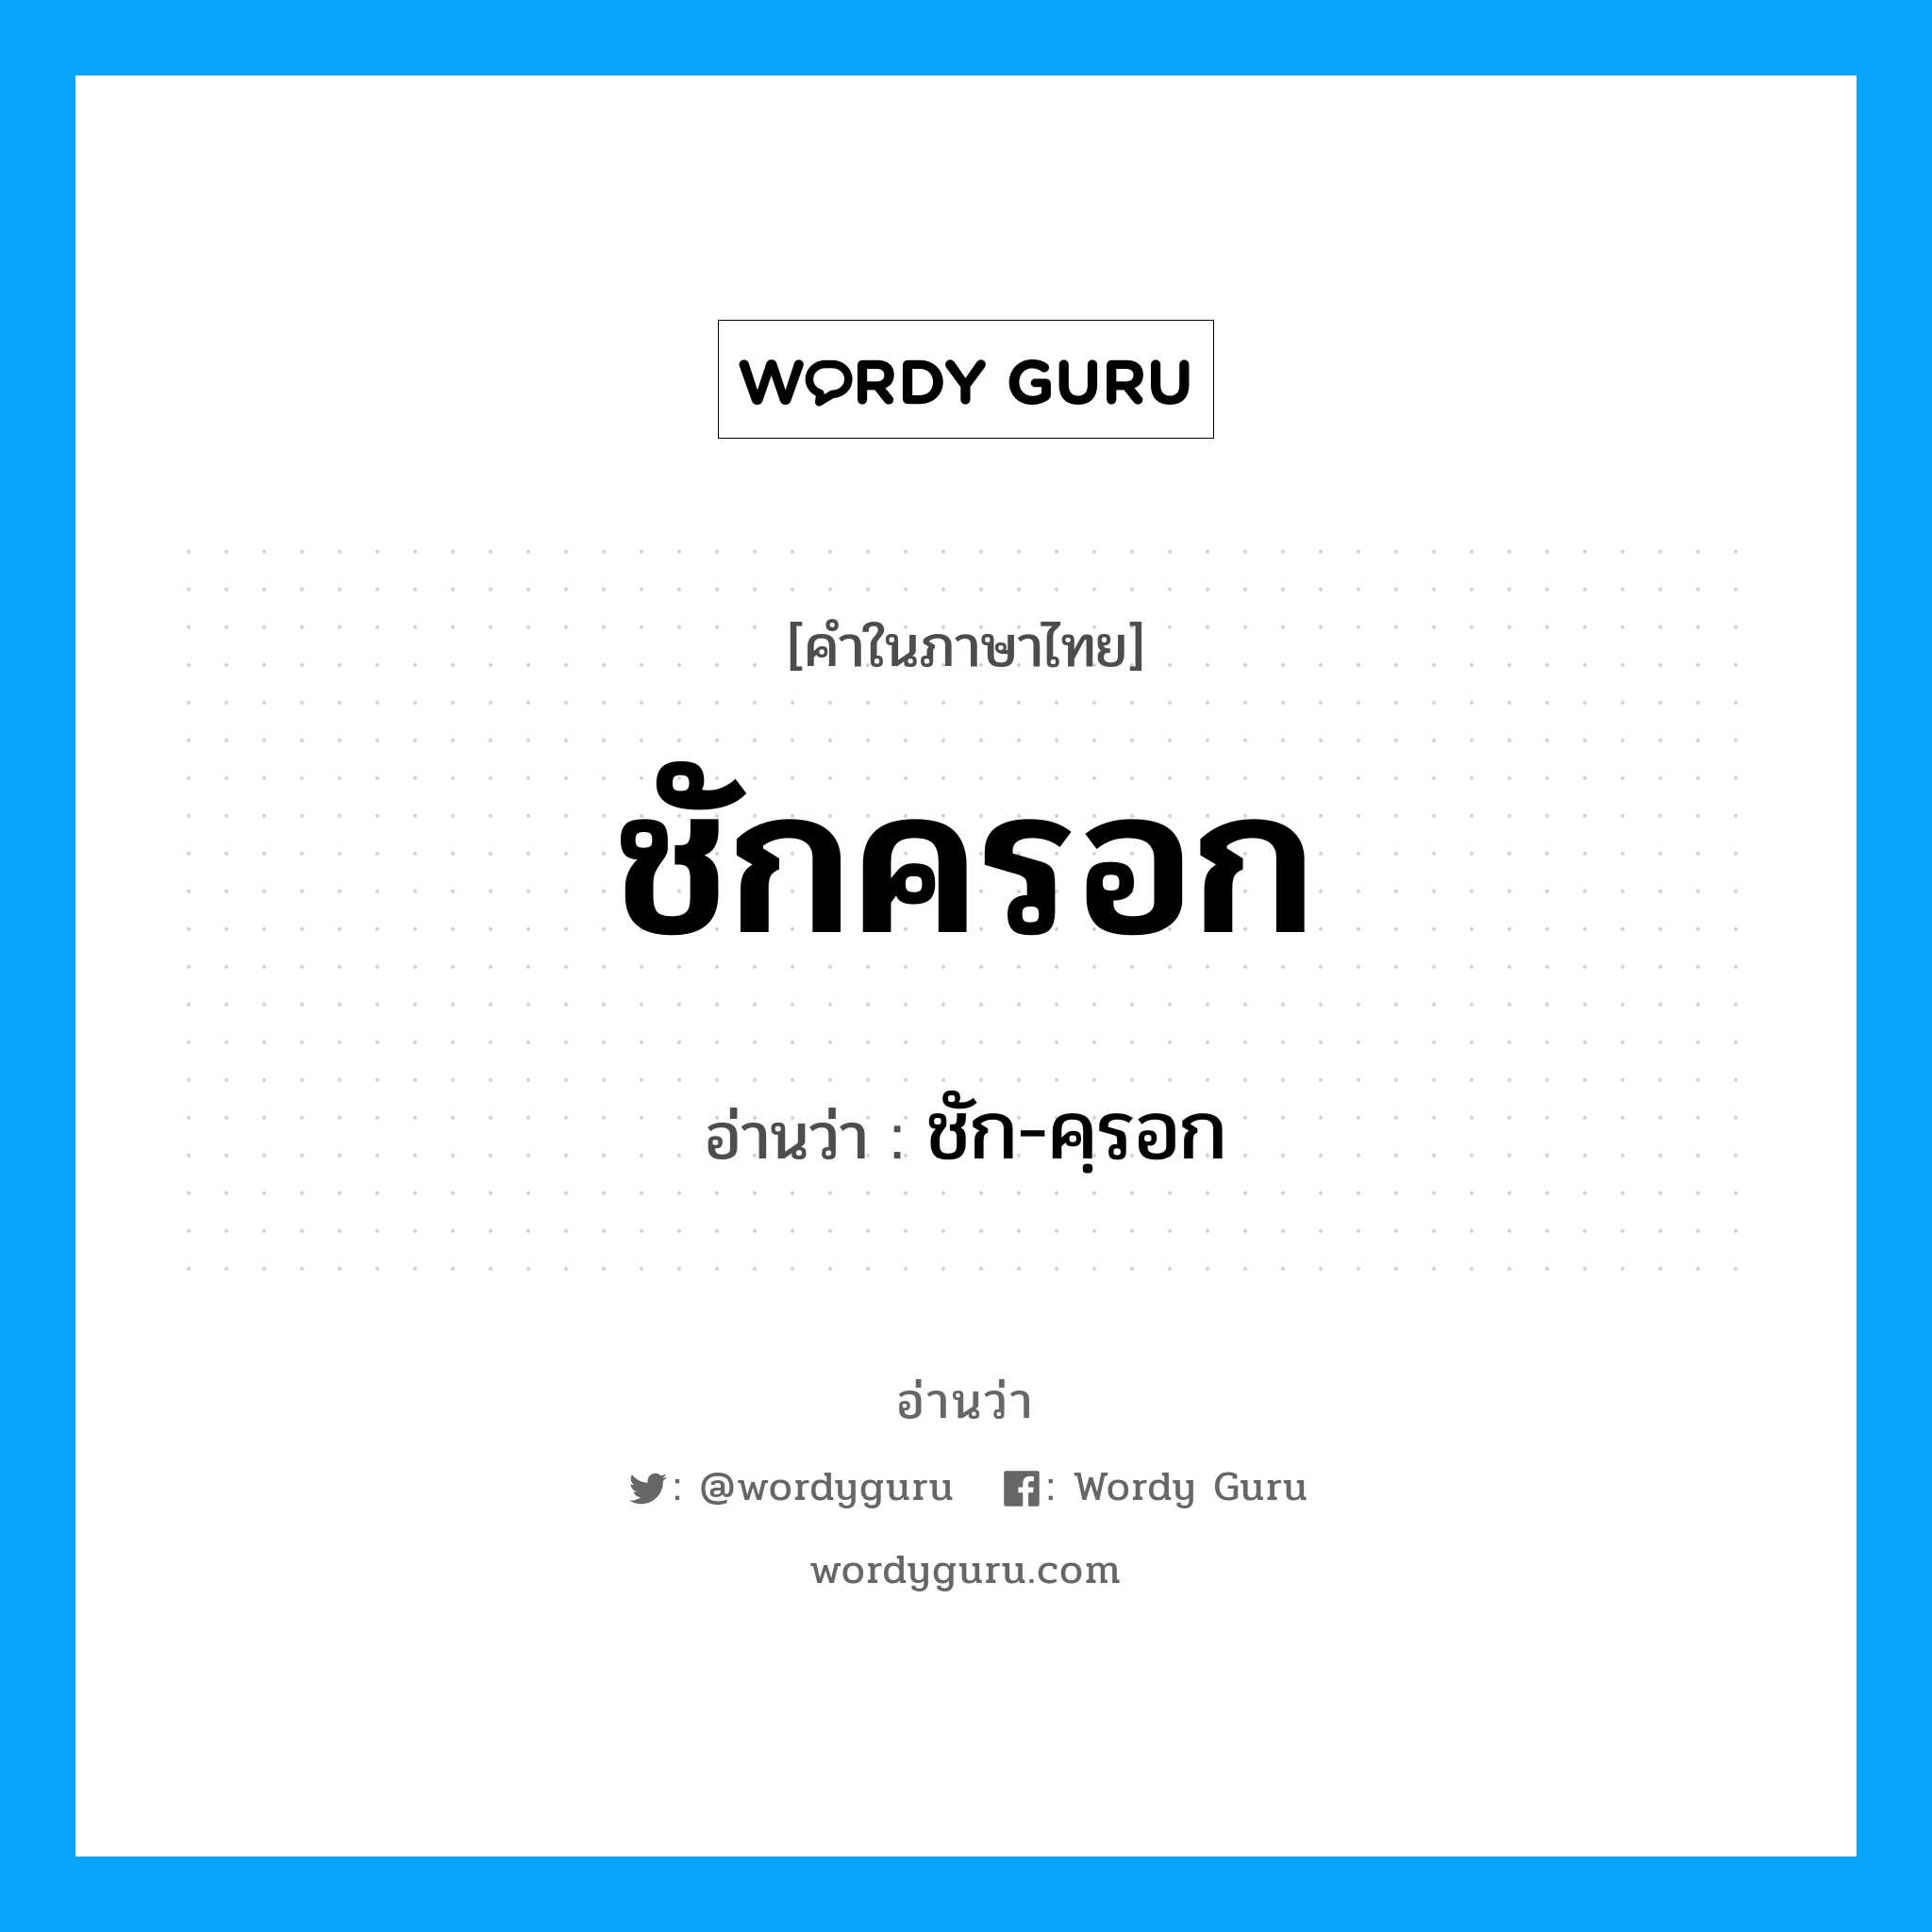 ชัก-คฺรอก เป็นคำอ่านของคำไหน?, คำในภาษาไทย ชัก-คฺรอก อ่านว่า ชักครอก